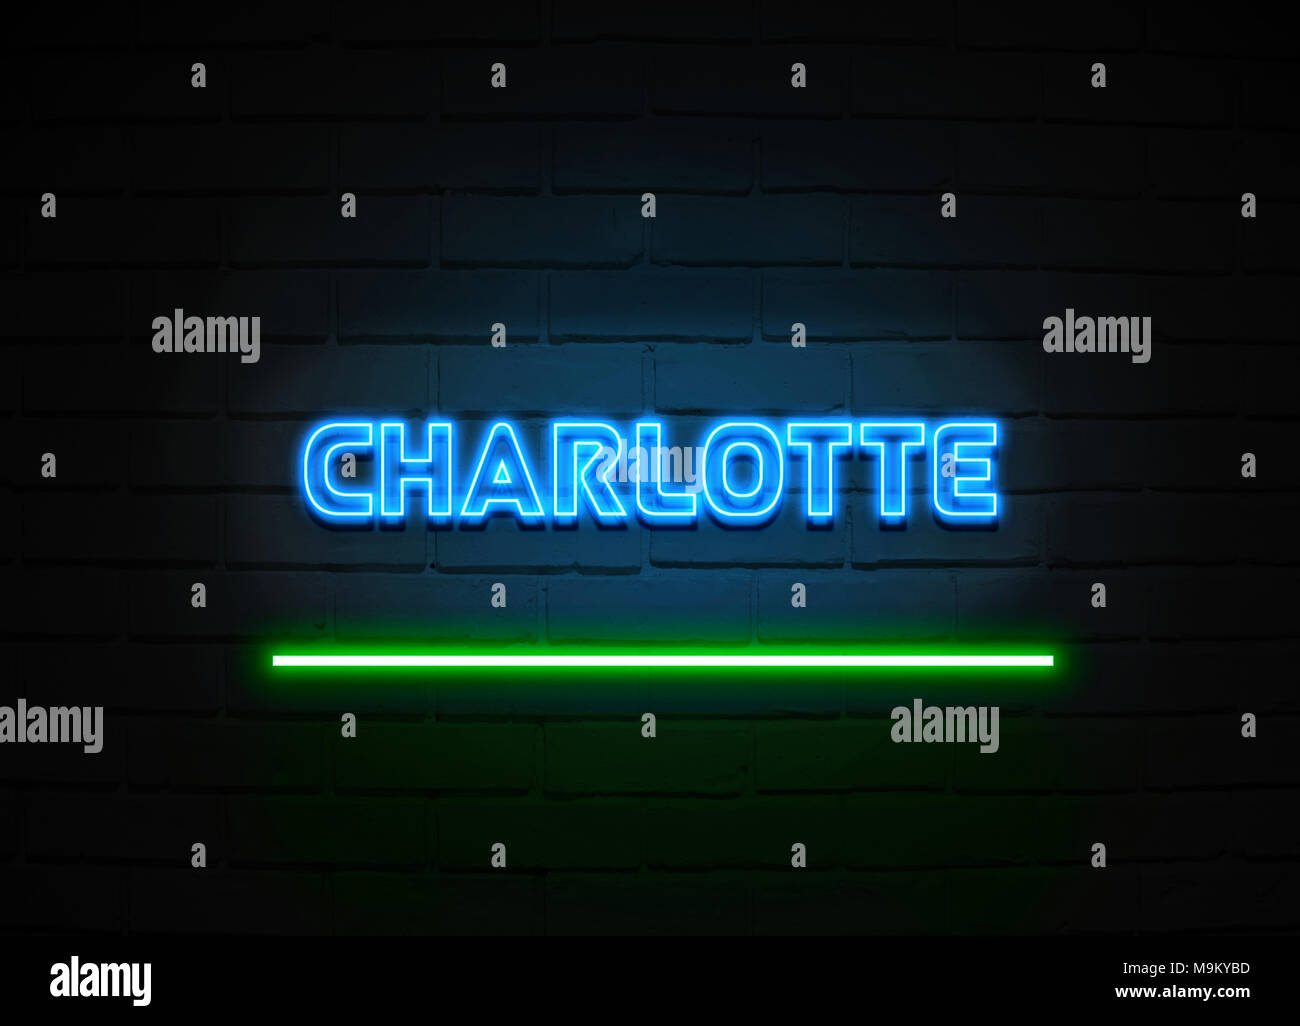 Charlotte Leuchtreklame - glühende Leuchtreklame auf brickwall Wand - 3D-Royalty Free Stock Illustration dargestellt. Stockfoto